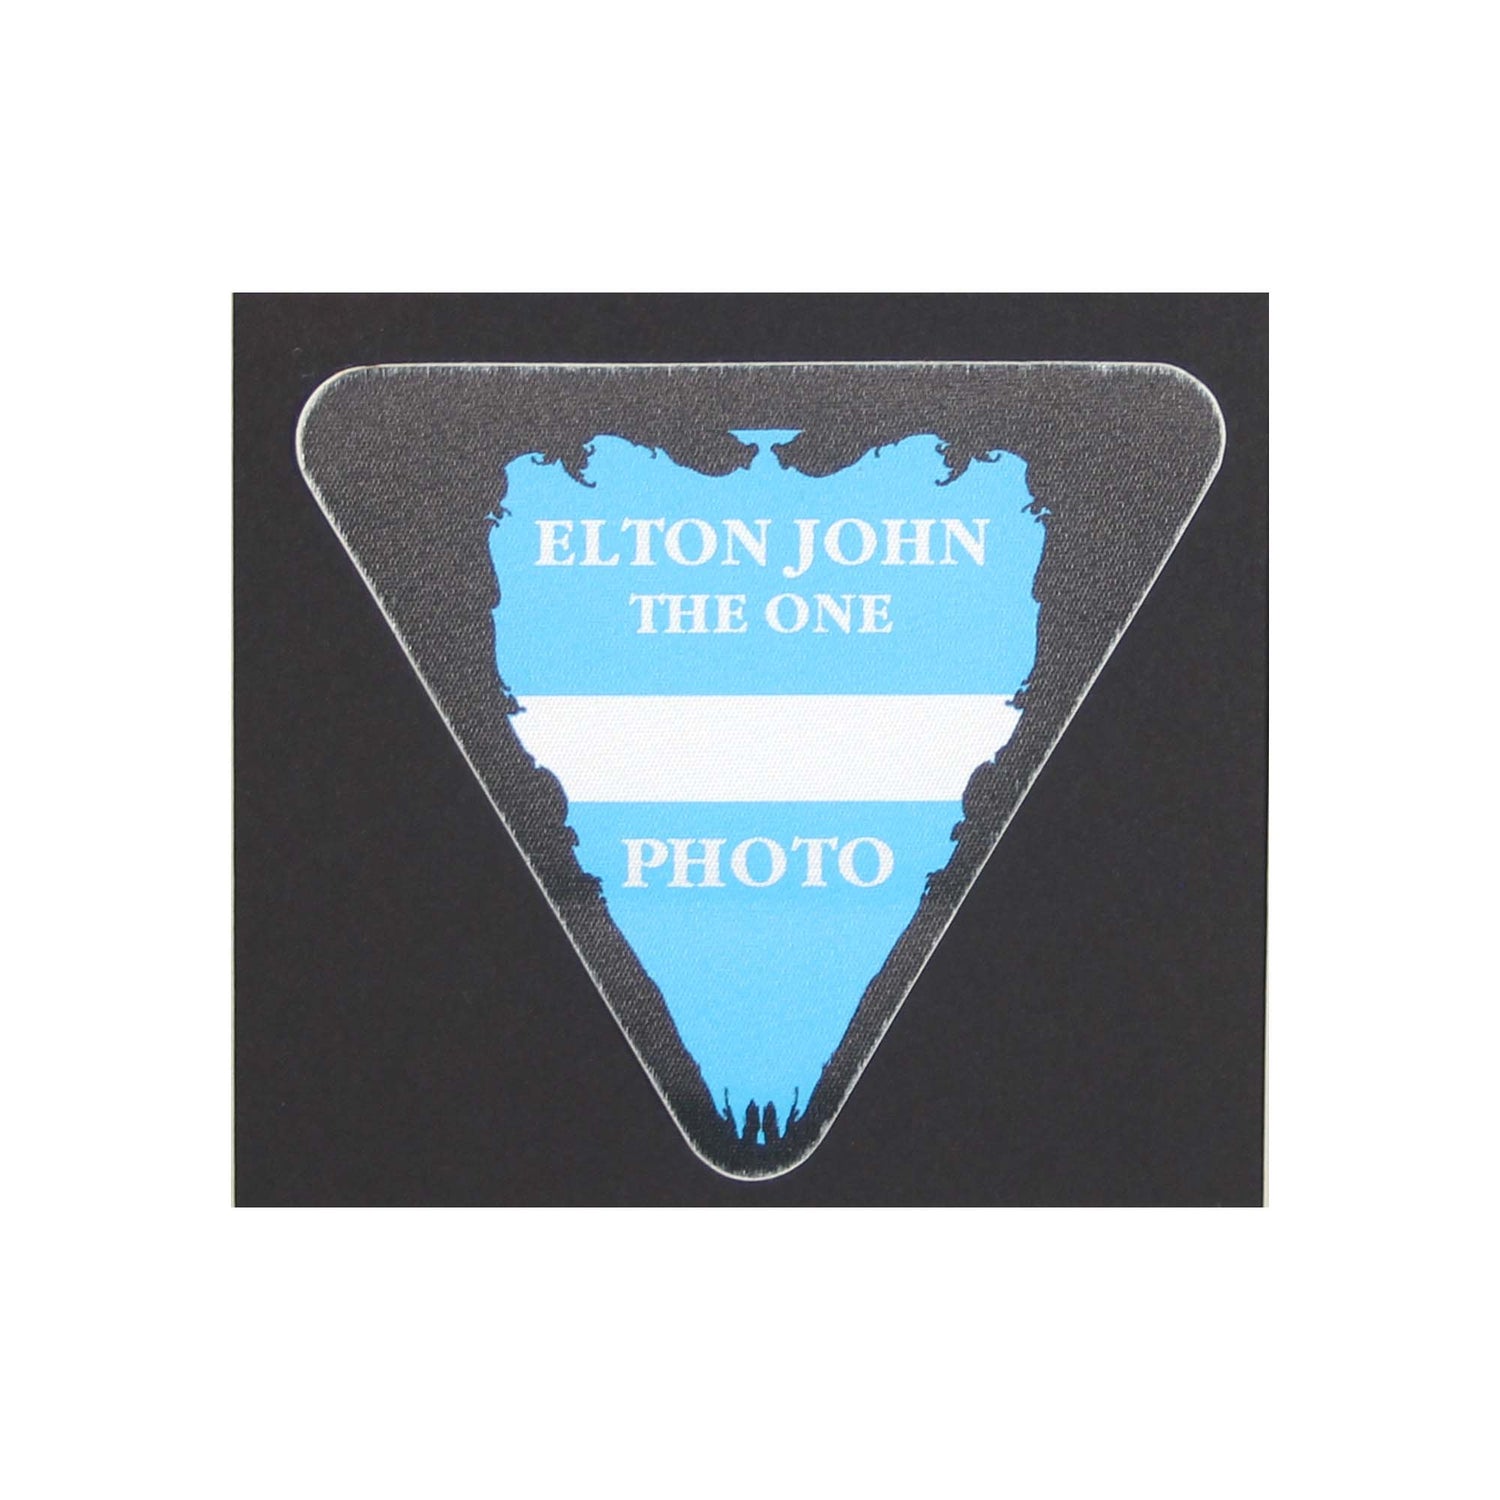 Elton John The One Tour 1992 - 93 Backstage Pass Memorabilia Ticket